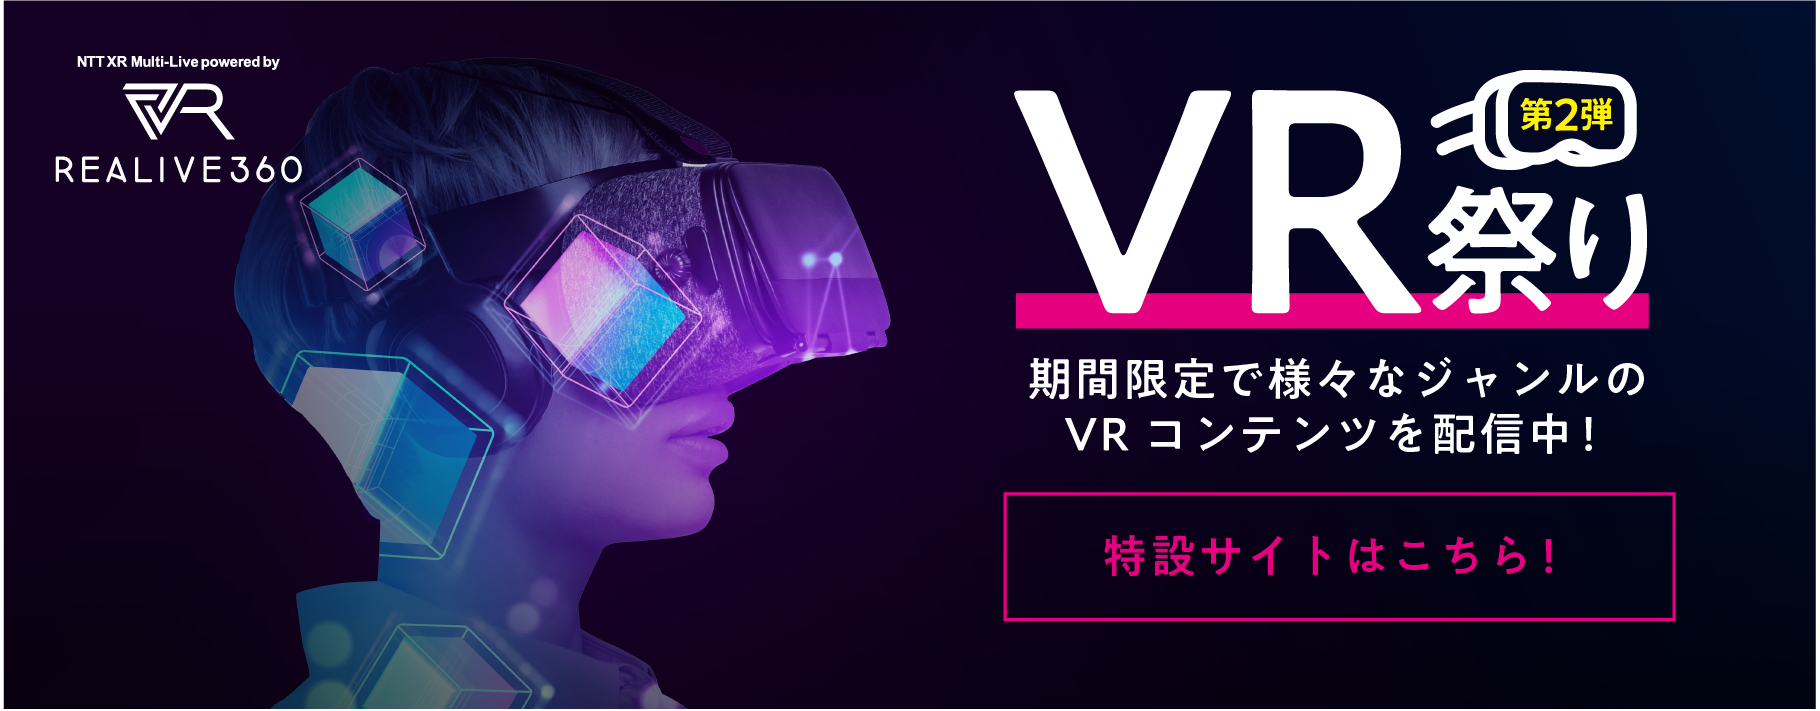 VR祭り